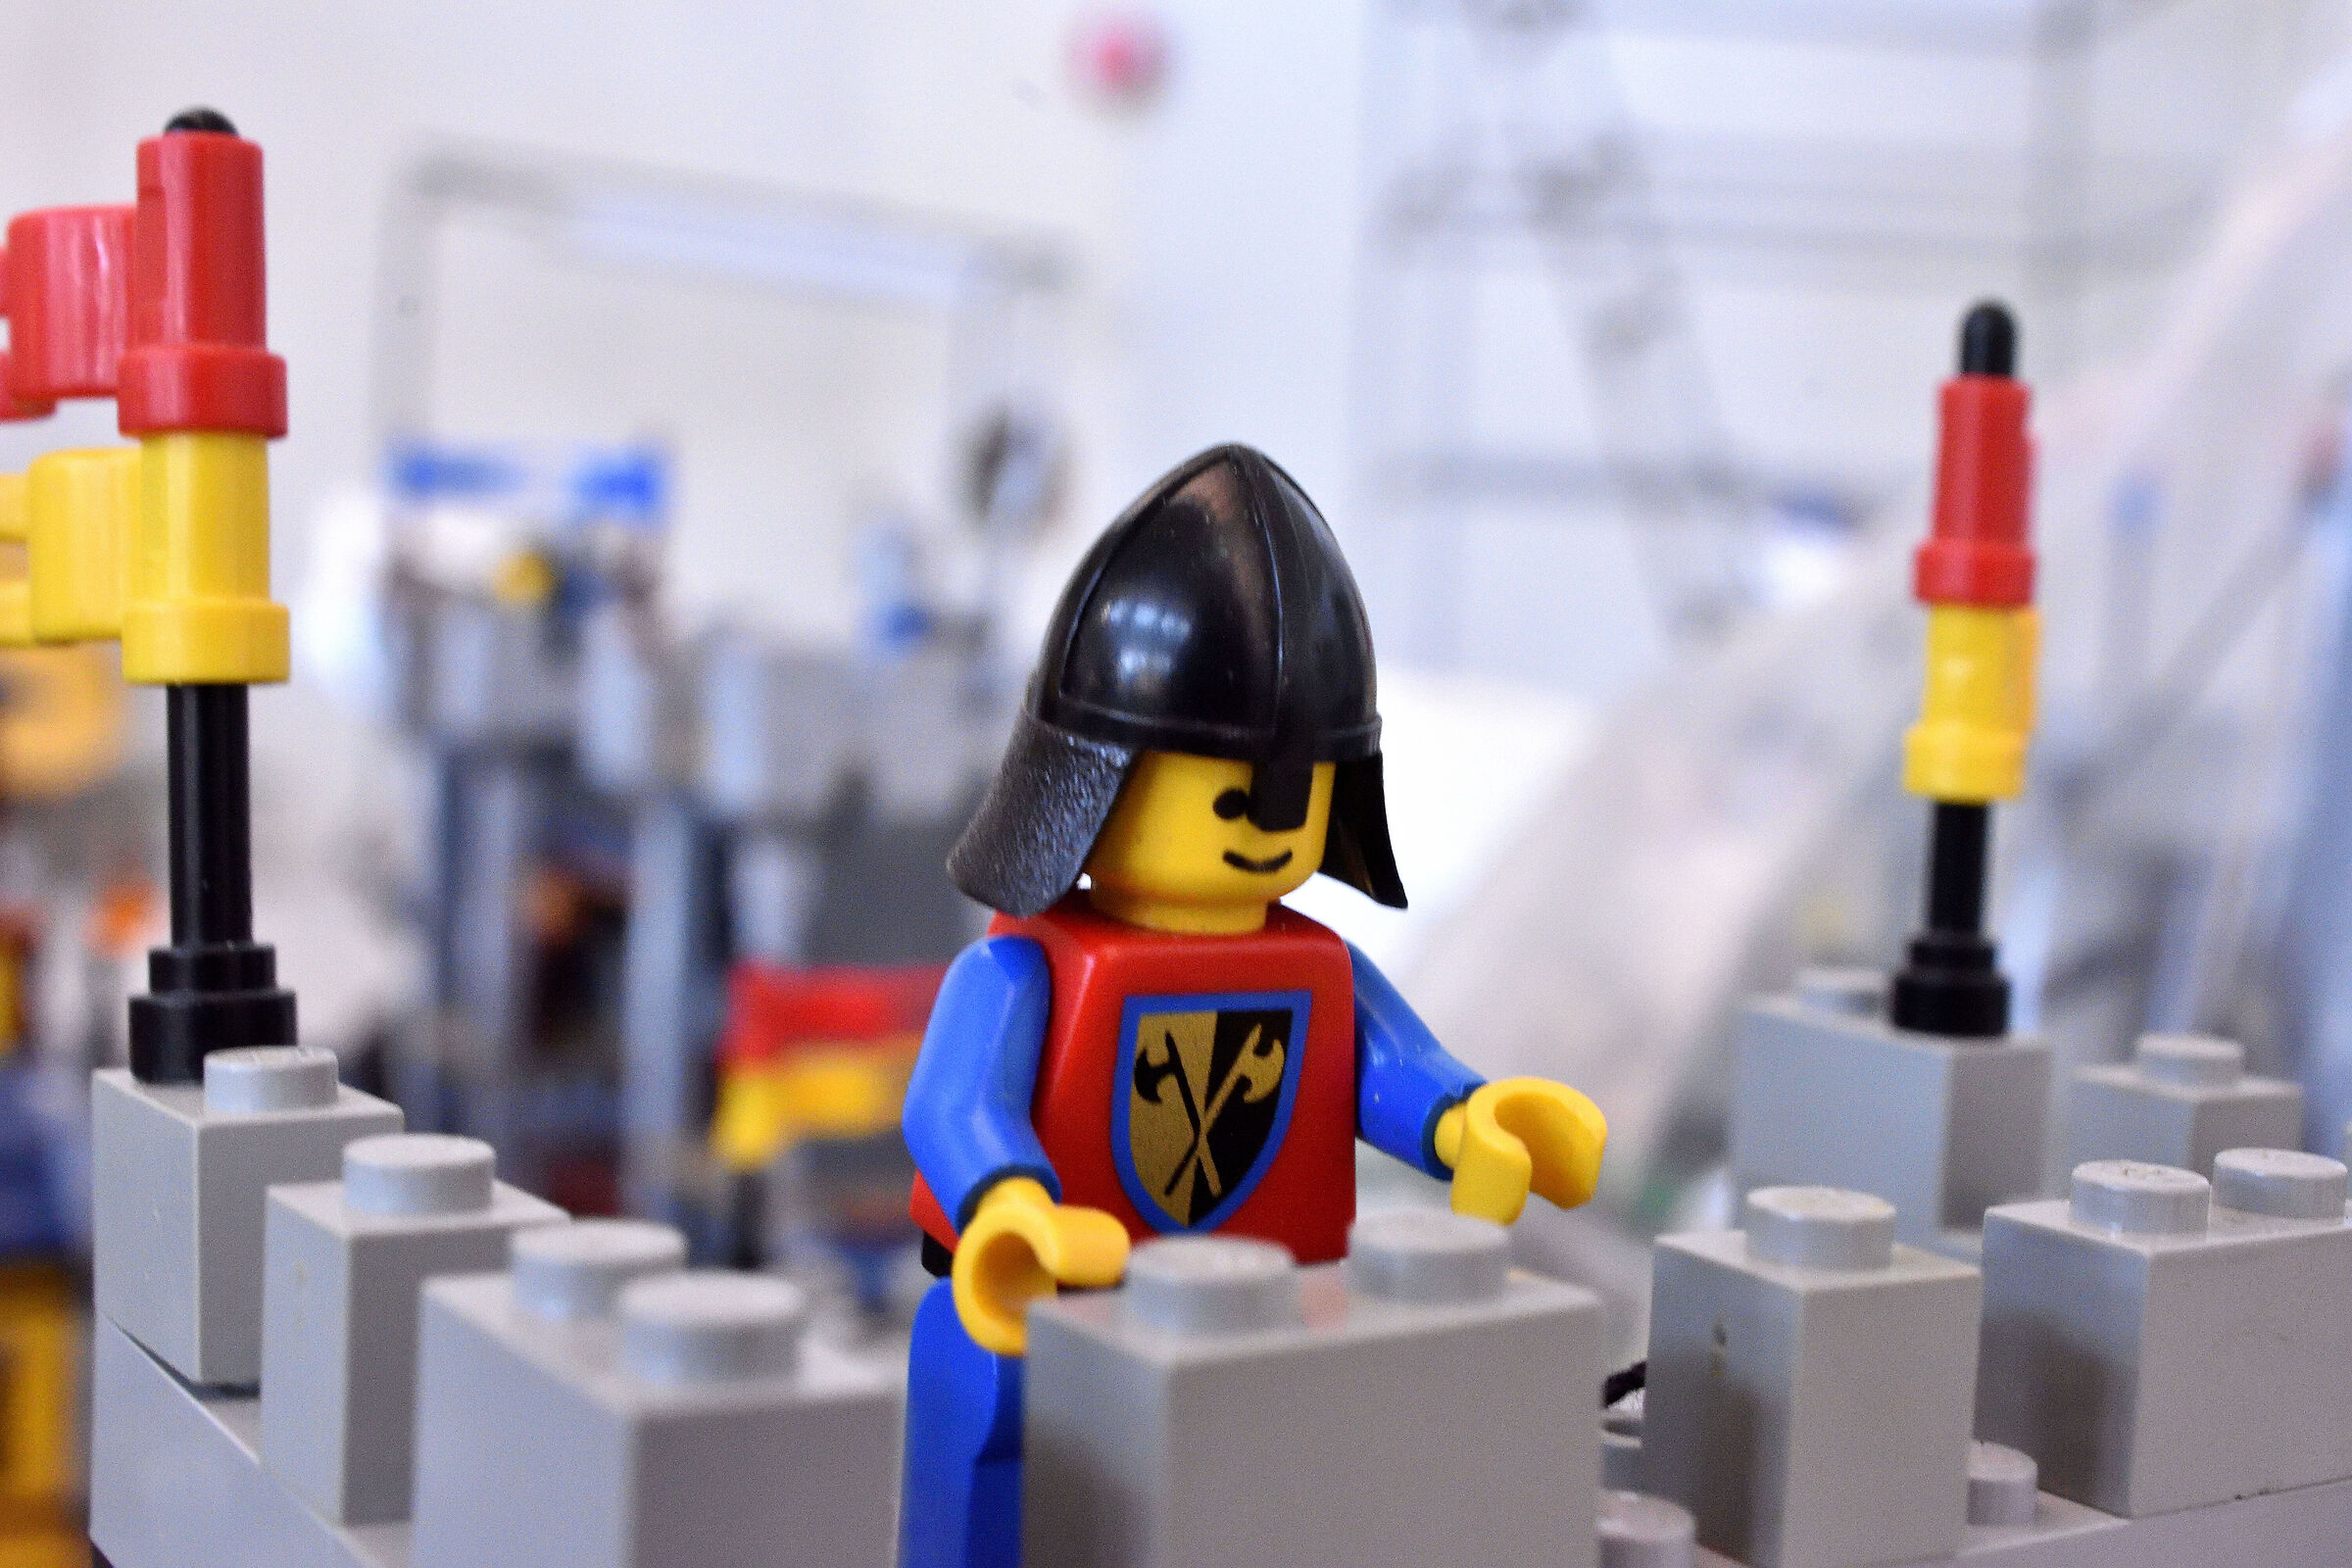 The LEGO Guard...